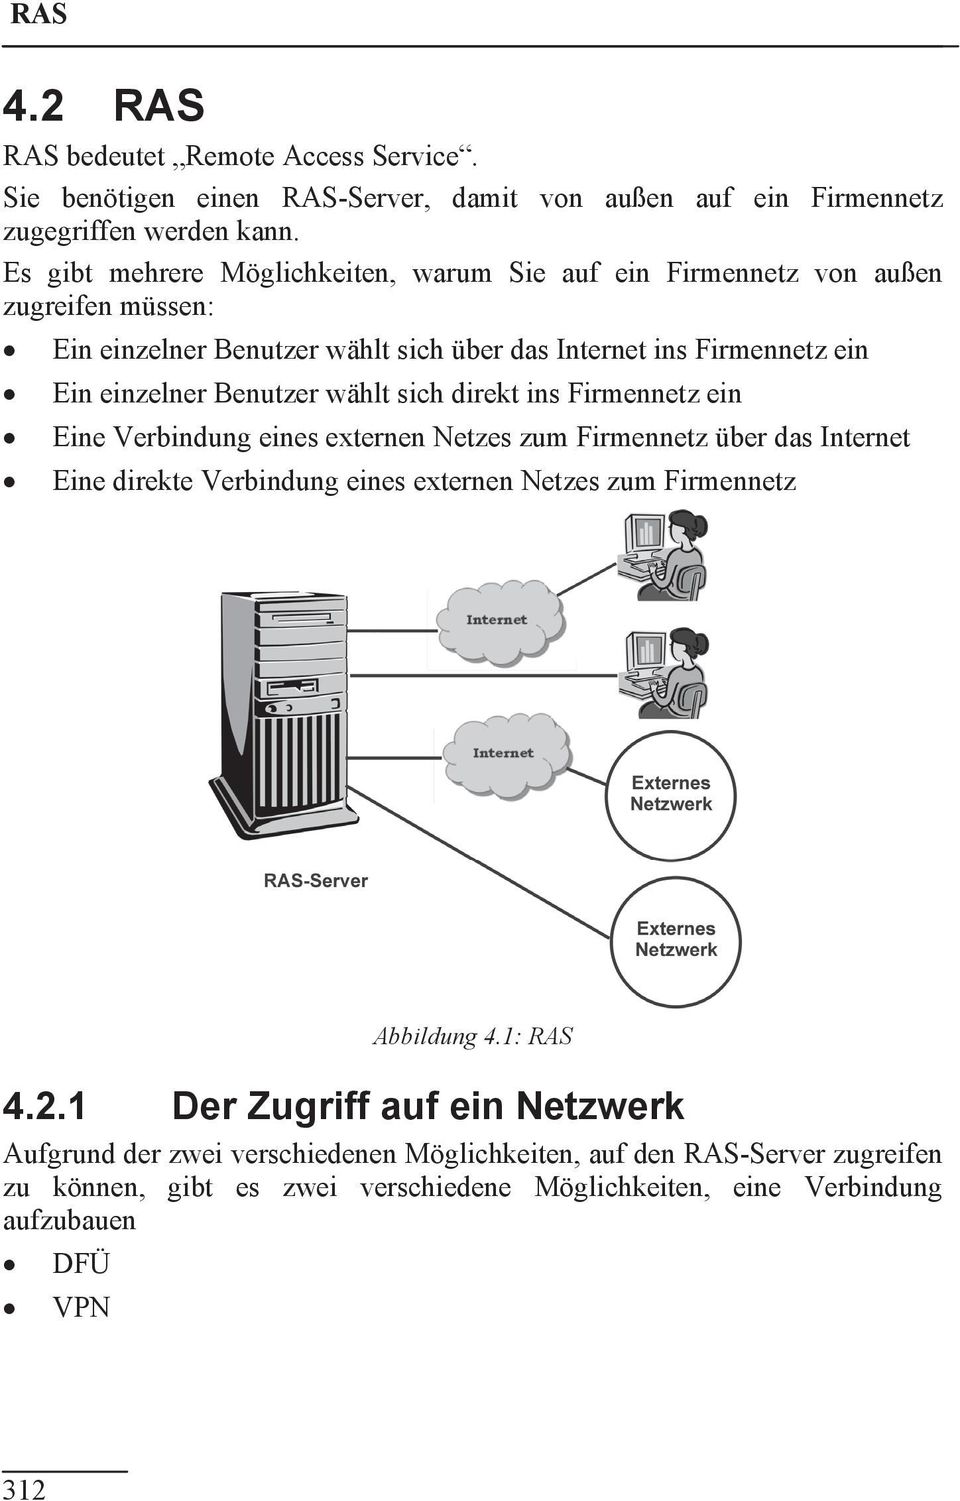 Benutzer wählt sich direkt ins Firmennetz ein Eine Verbindung eines externen Netzes zum Firmennetz über das Internet Eine direkte Verbindung eines externen Netzes zum Firmennetz